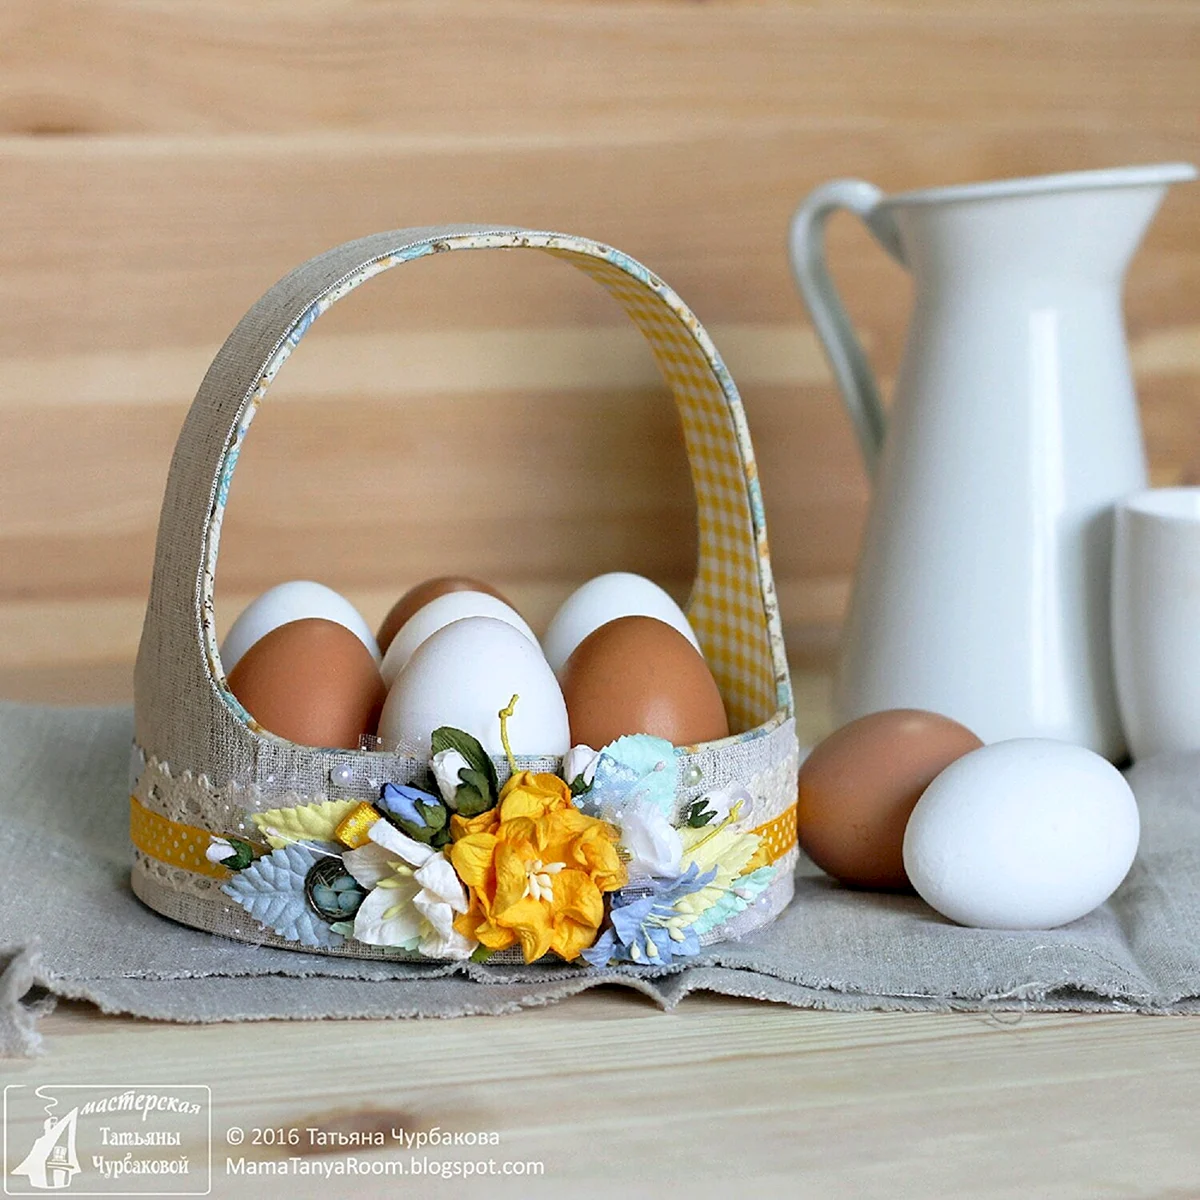 Пасхальная корзинка для яиц